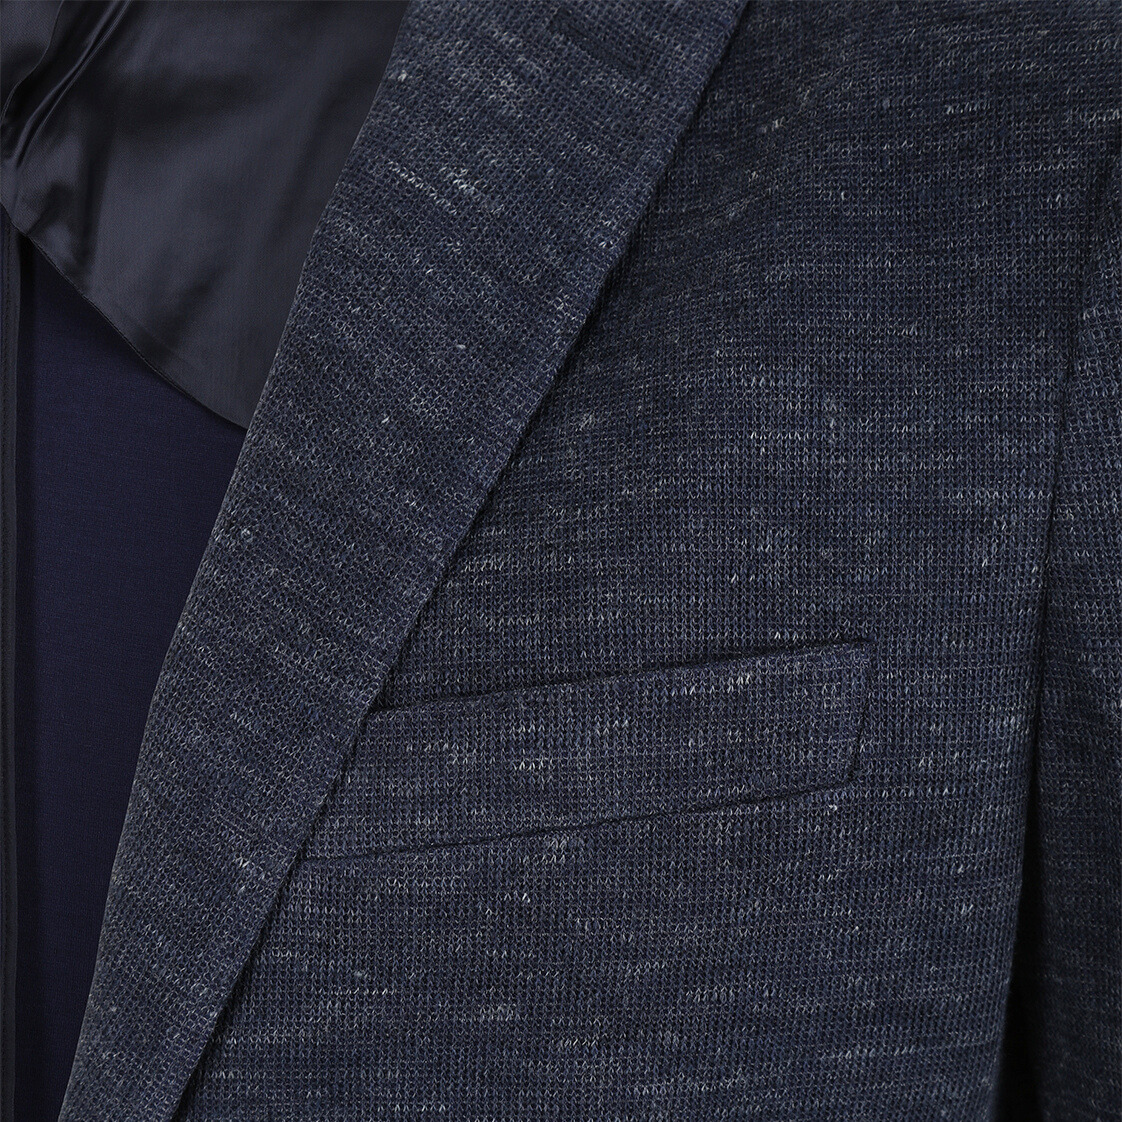 Gotstyle Fashion - Christopher Bates Blazers Patch Pocket Melange Jersey Knit Blazer - Navy